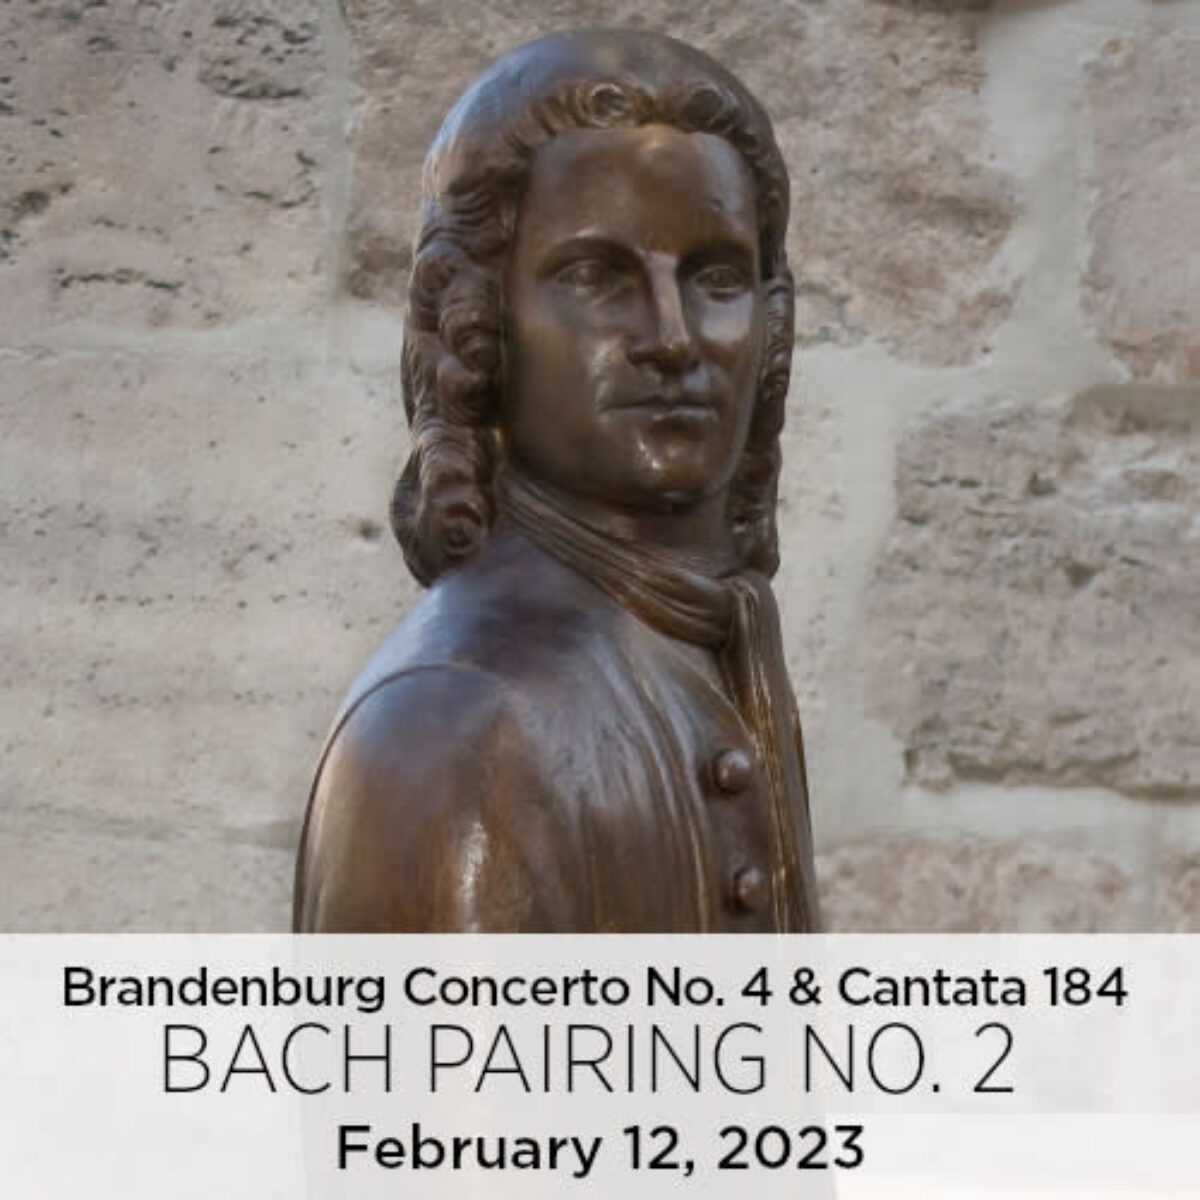 Bach Pairing No. 2